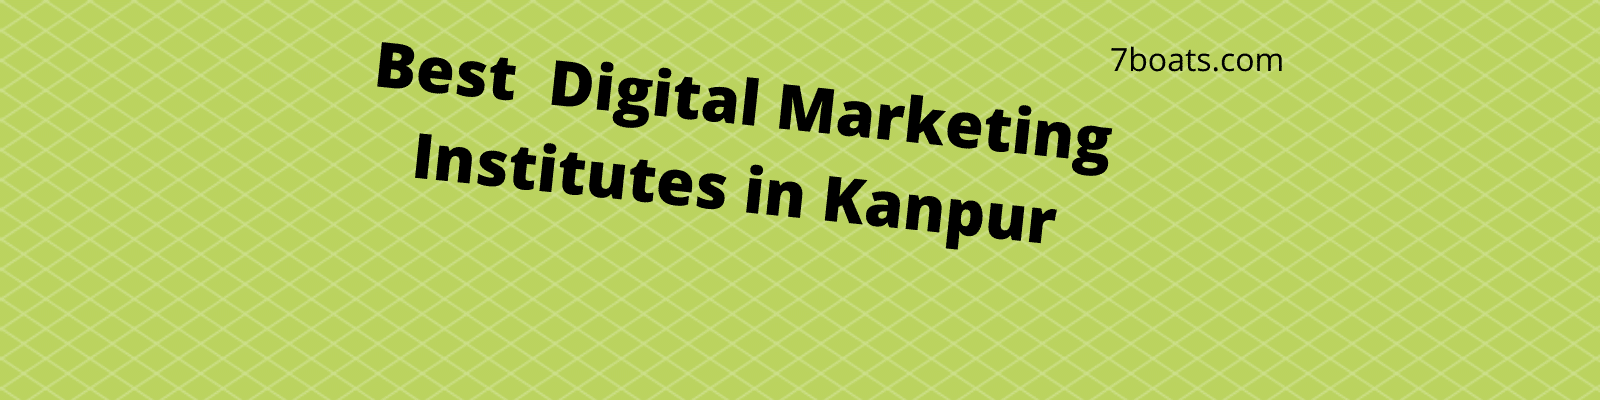 Best Digital Marketing Institutes in Kanpur